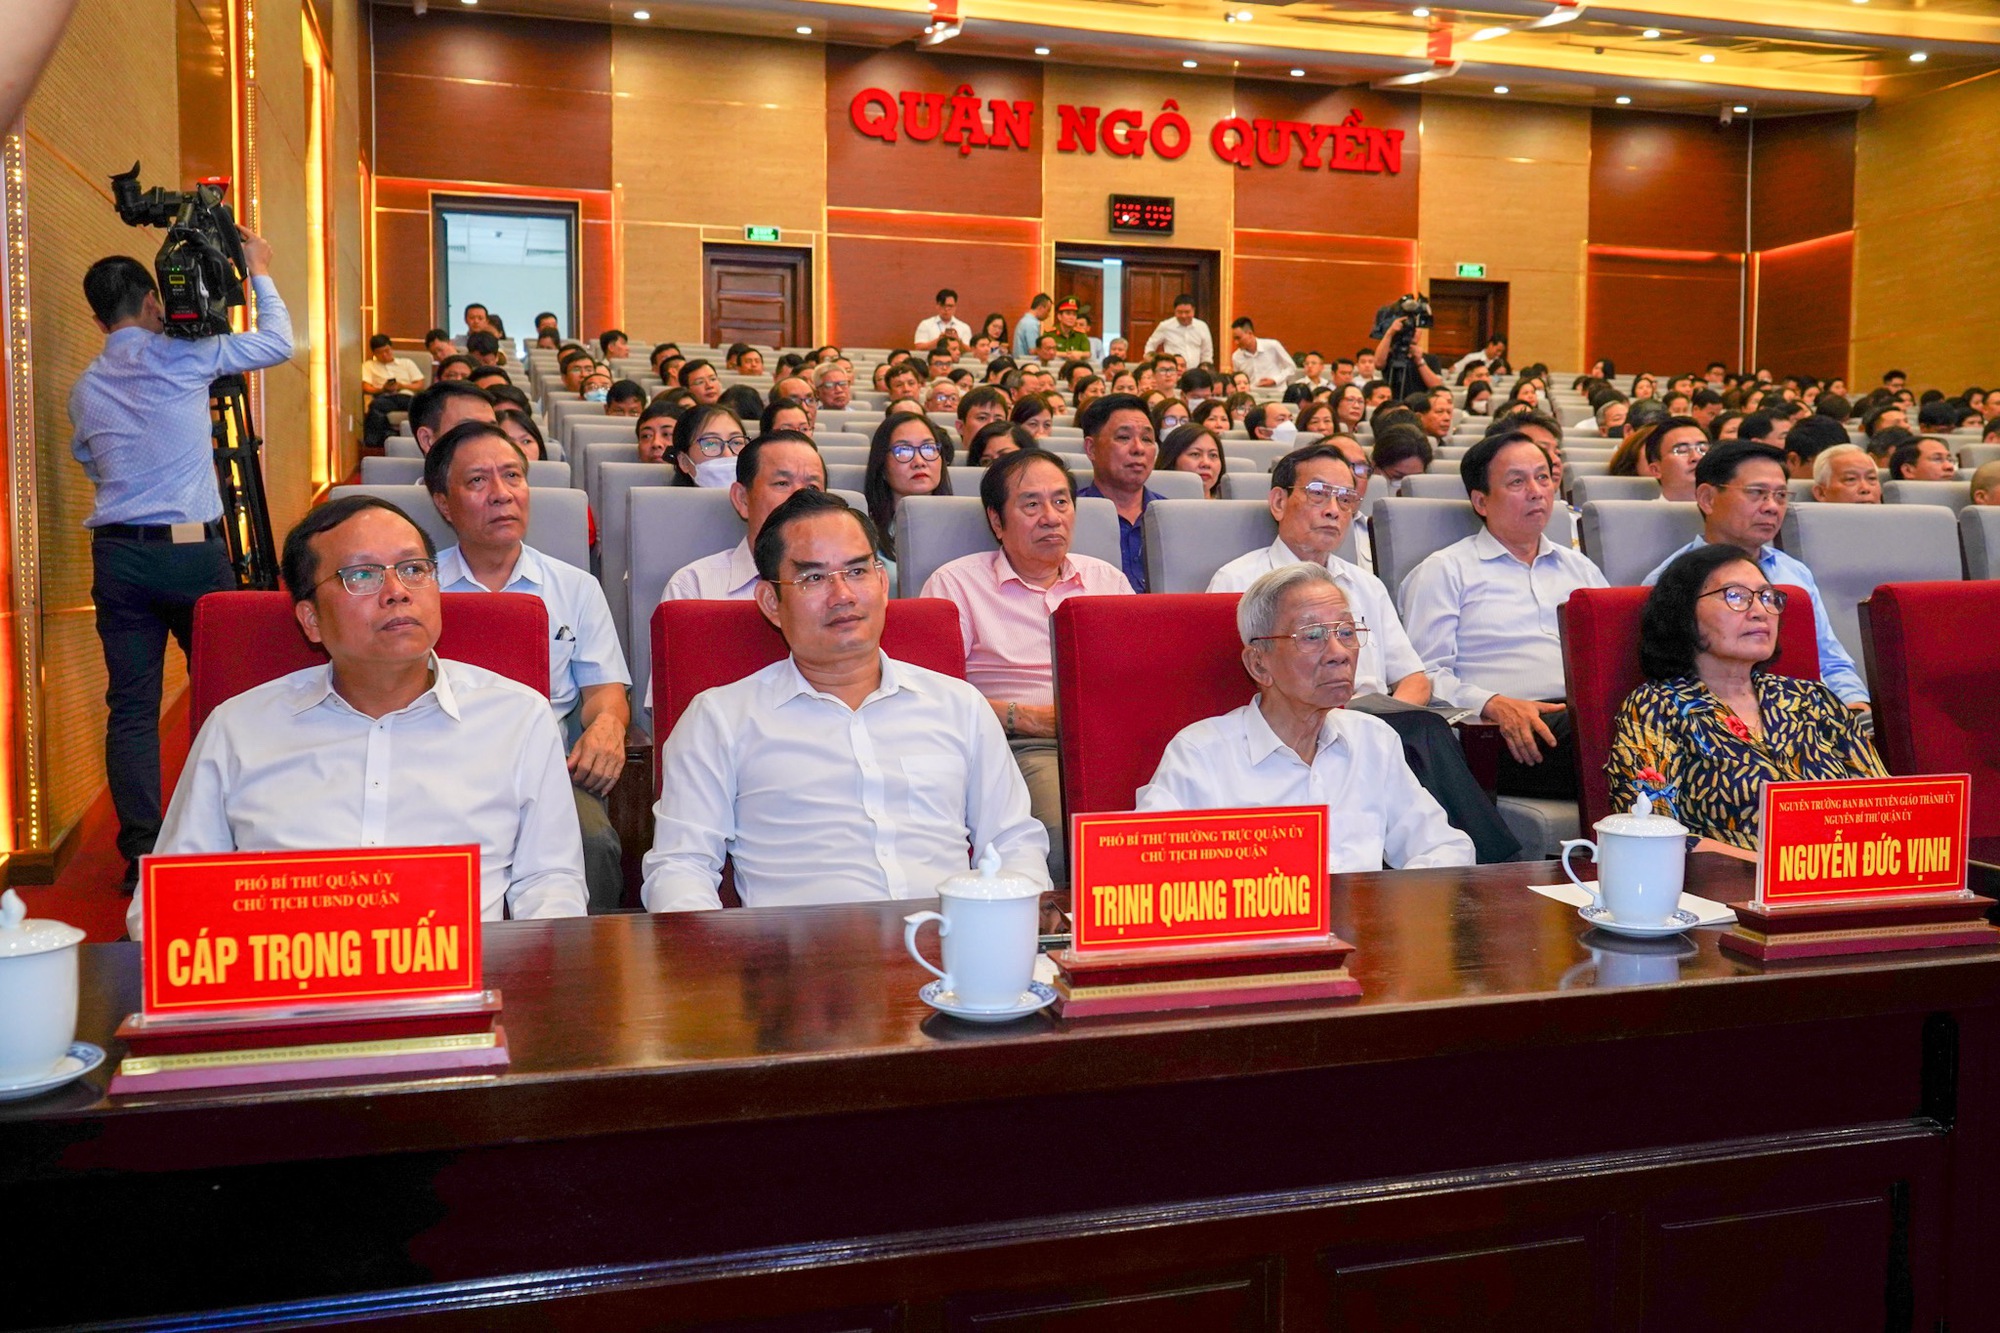 Chủ tịch Quốc hội Vương Đình Huệ tiếp xúc cử tri quận Ngô Quyền, Hải Phòng - Ảnh 2.